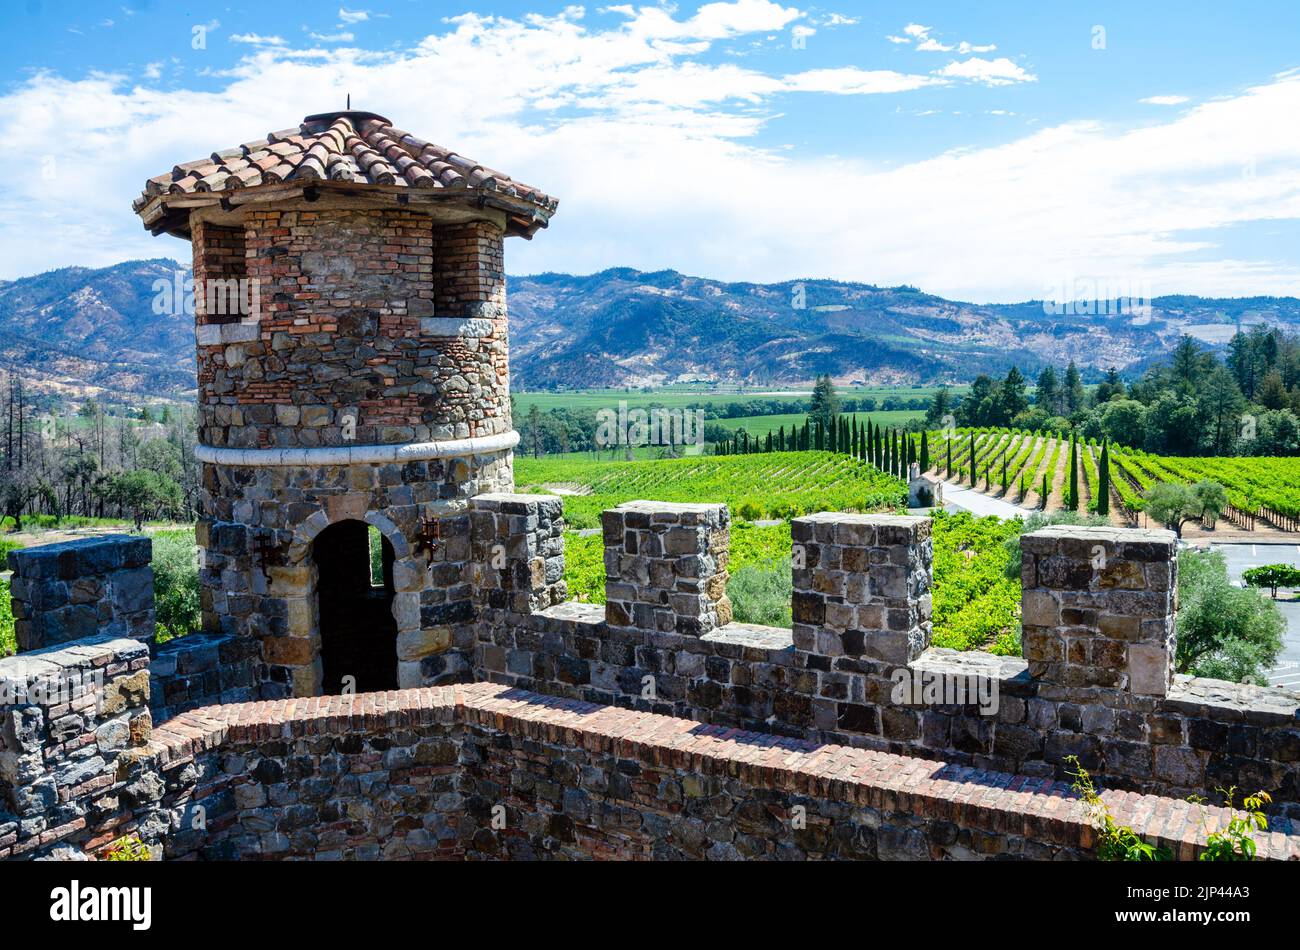 Castello di Amorosa, eine Weinkellerei in einem verspotteten toskanischen Schloss im Napa Valley in Kalifornien, USA, wo Sie Weinproben machen können Stockfoto